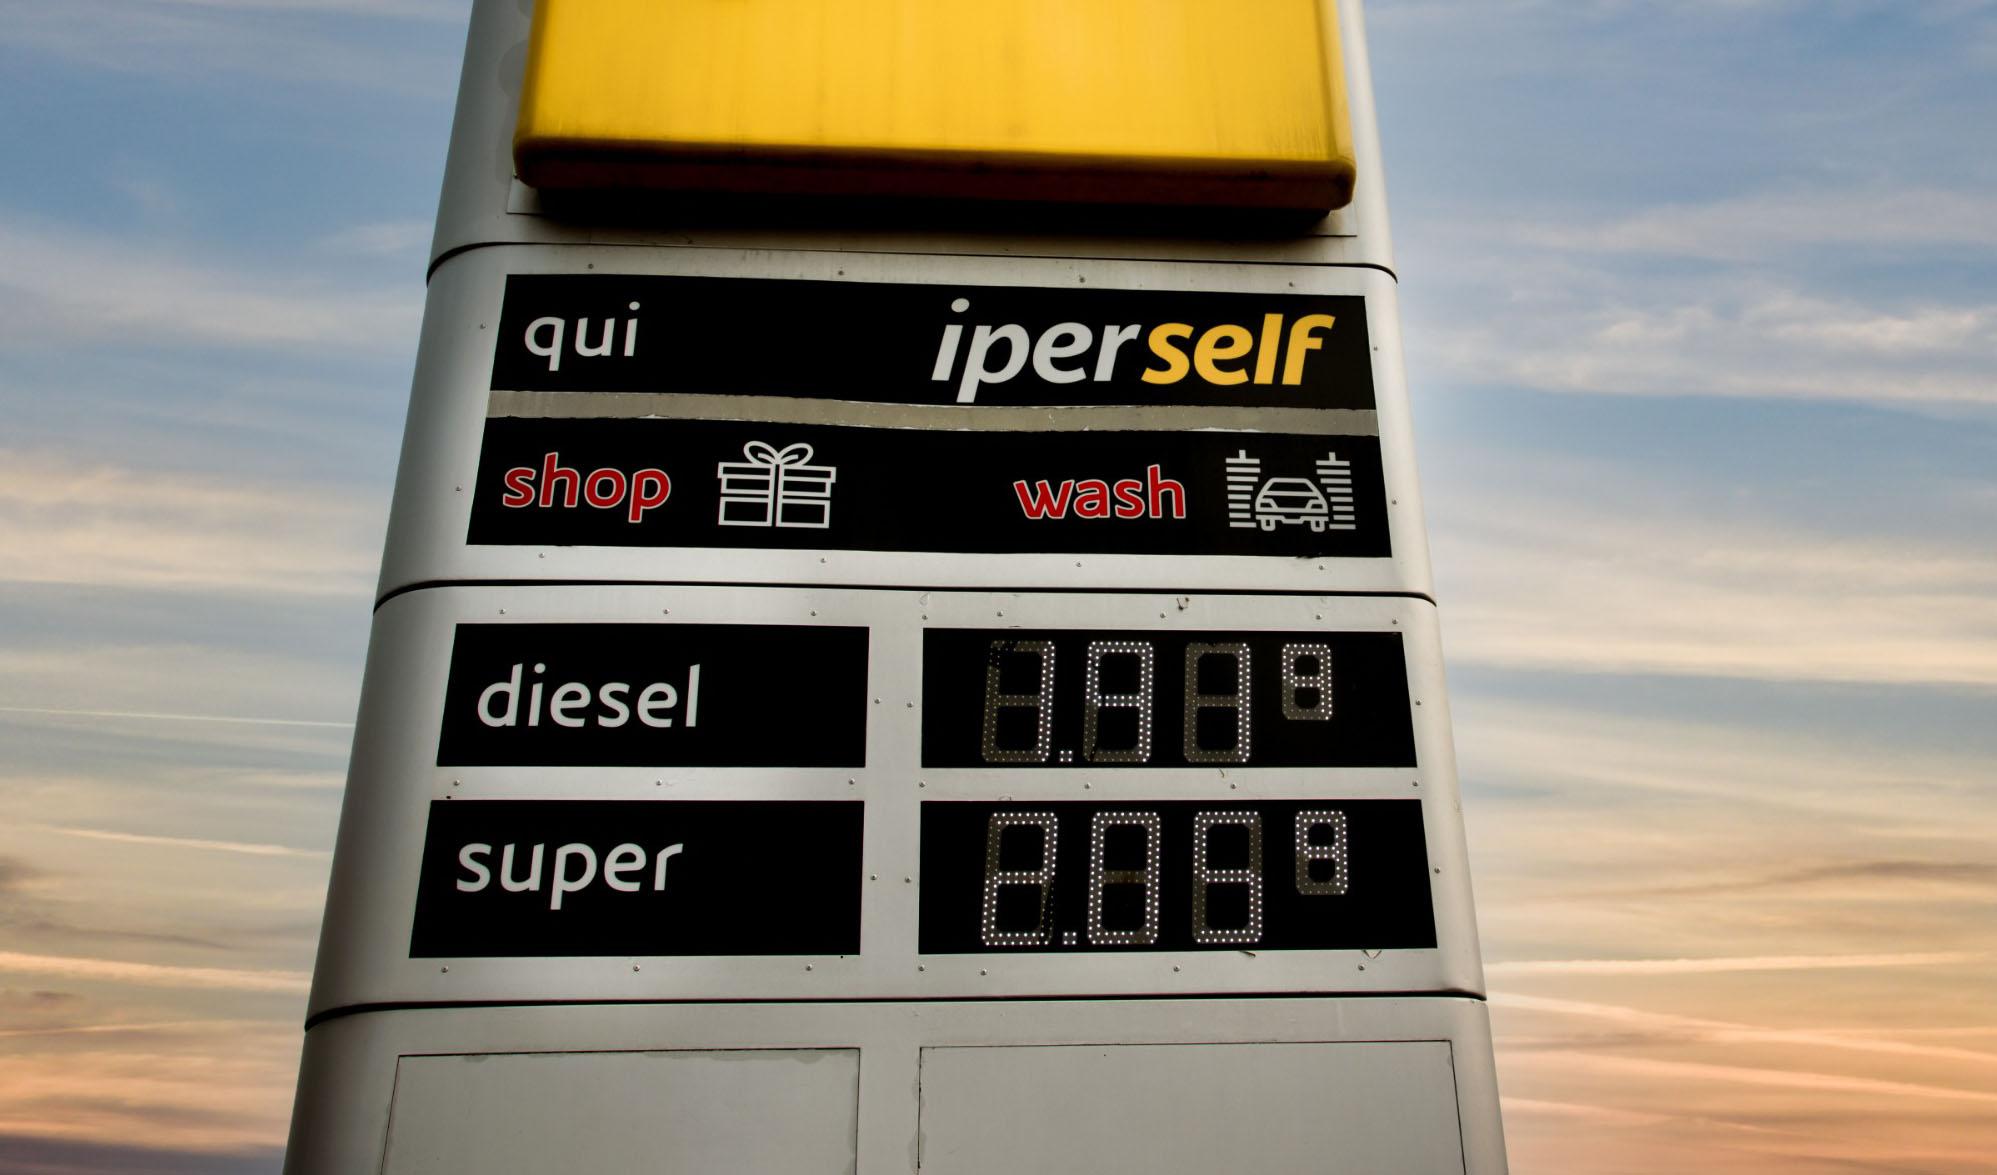 Aumento benzina: come cambia l’esposizione dei prezzi ai distributori